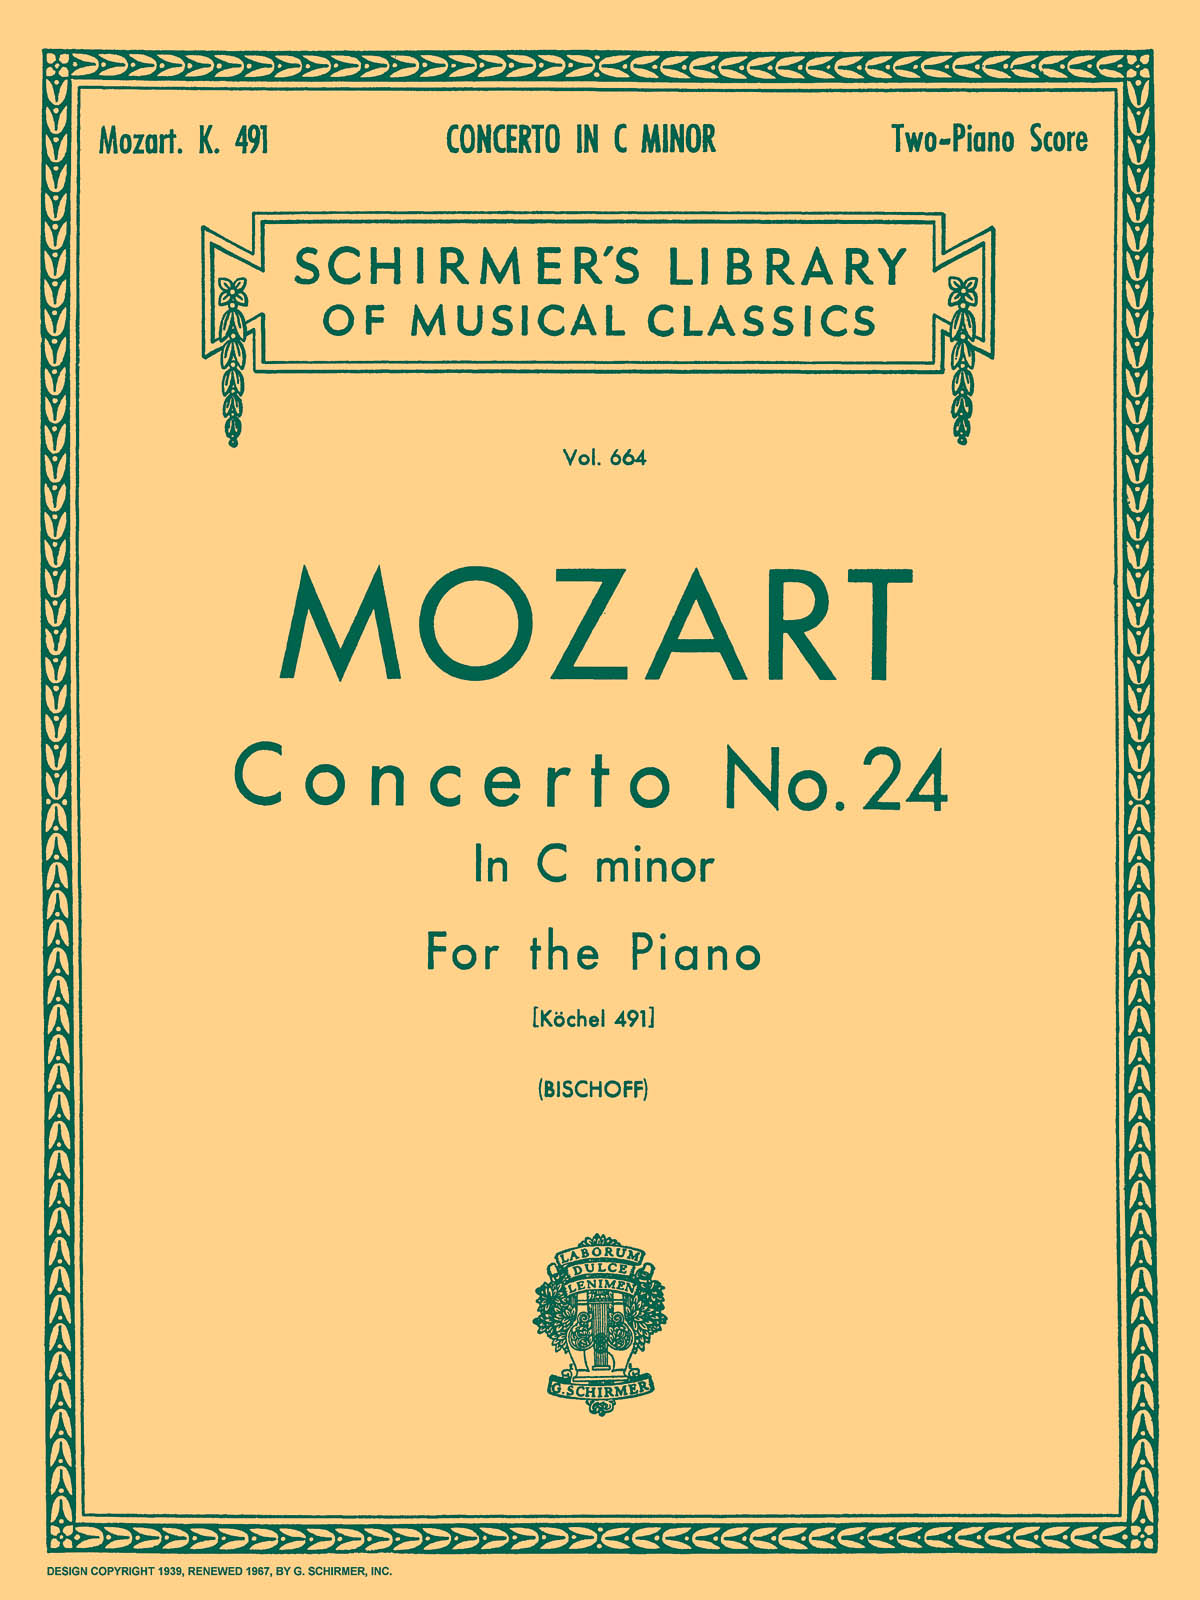 Mozart: Concerto No. 24 in C Minor, K.491